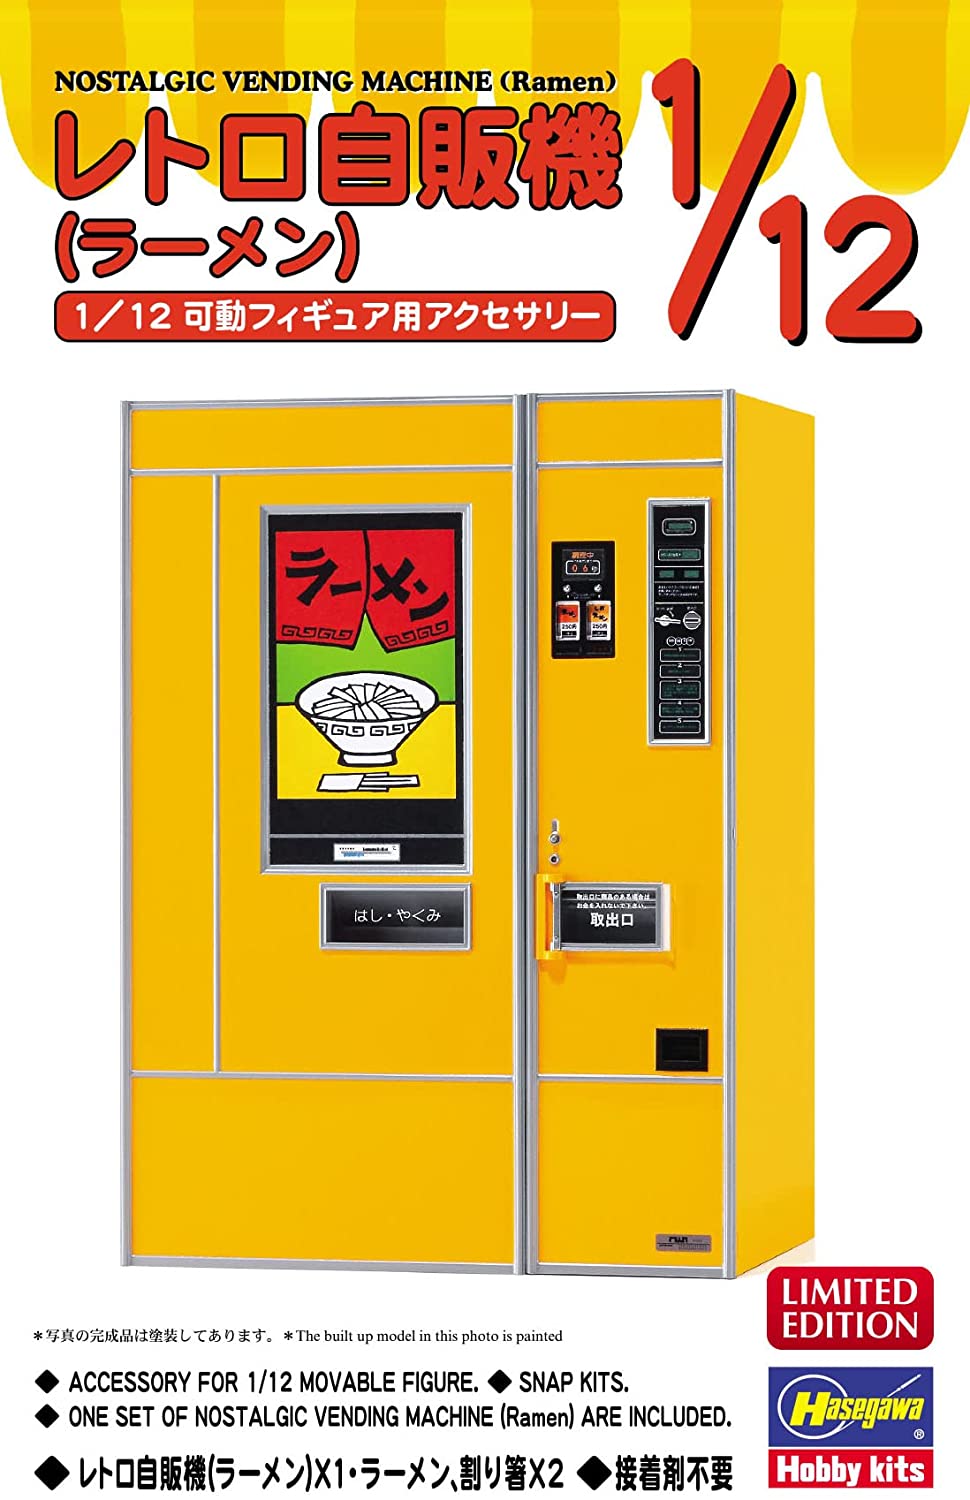 1/12 Retrospectively Vending Machine (Ramen Noodles)